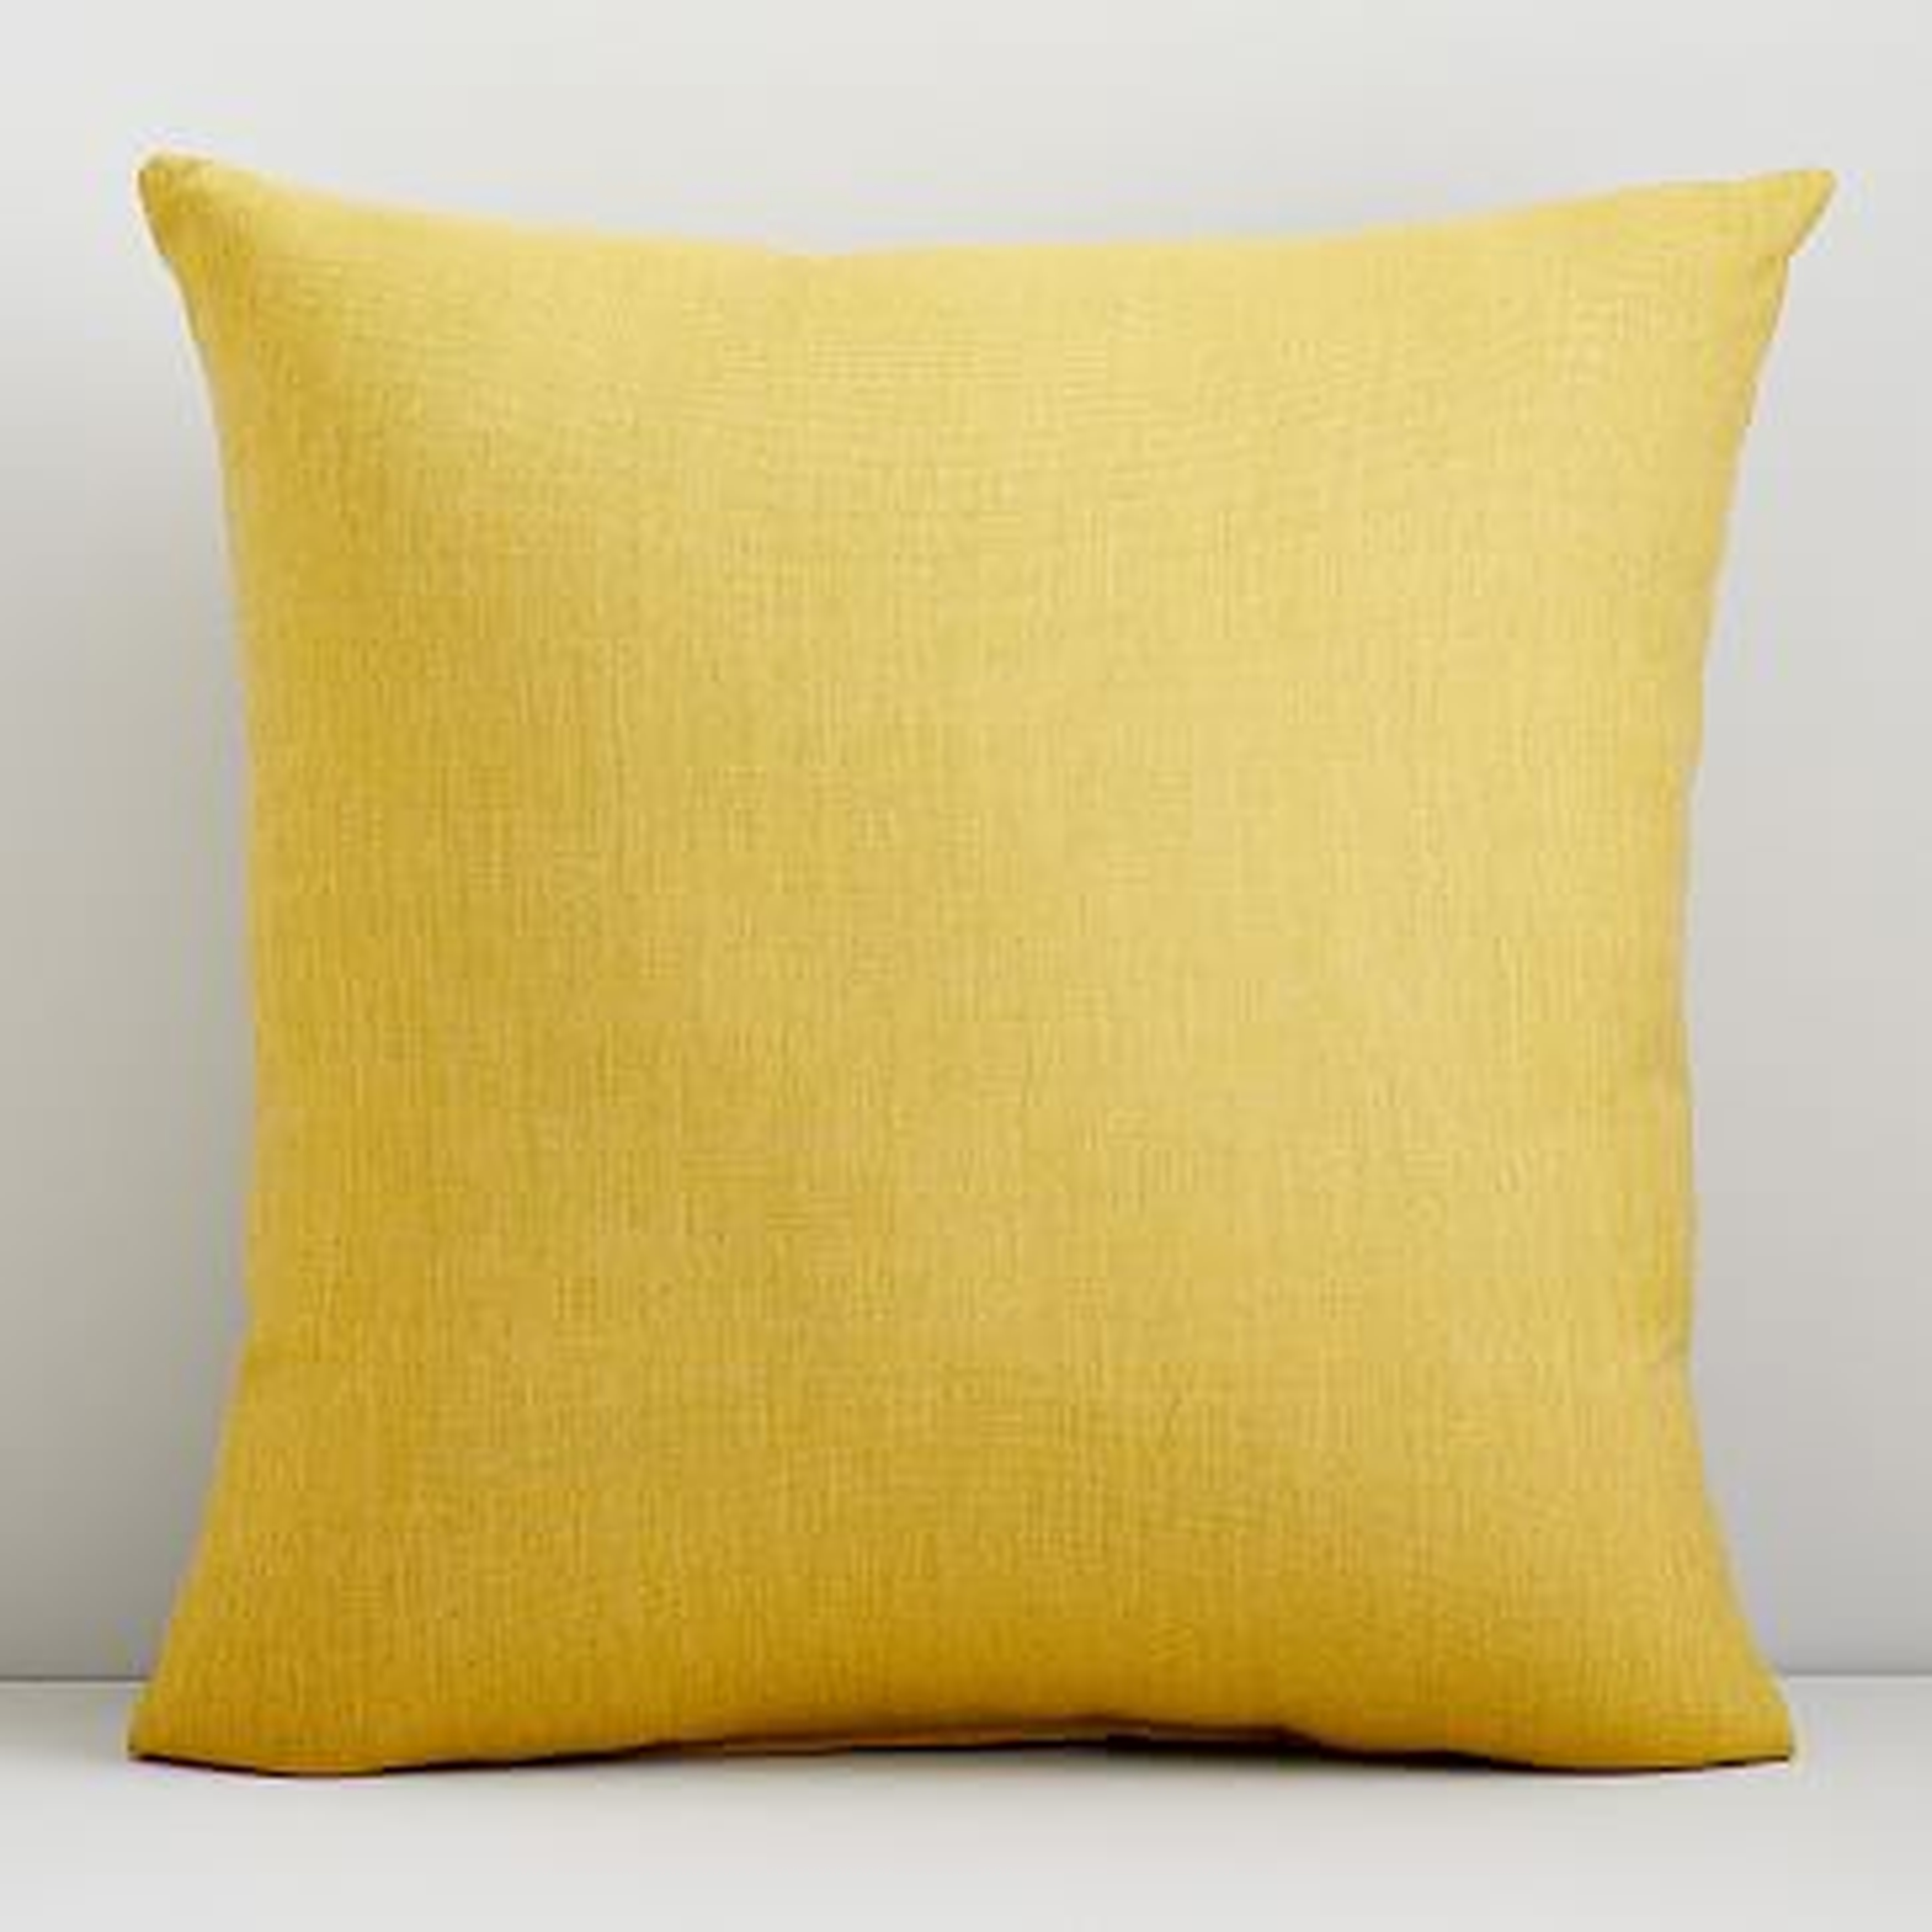 Sunbrella Indoor/Outdoor Cast Pillow, 20"x20", Citrus - West Elm